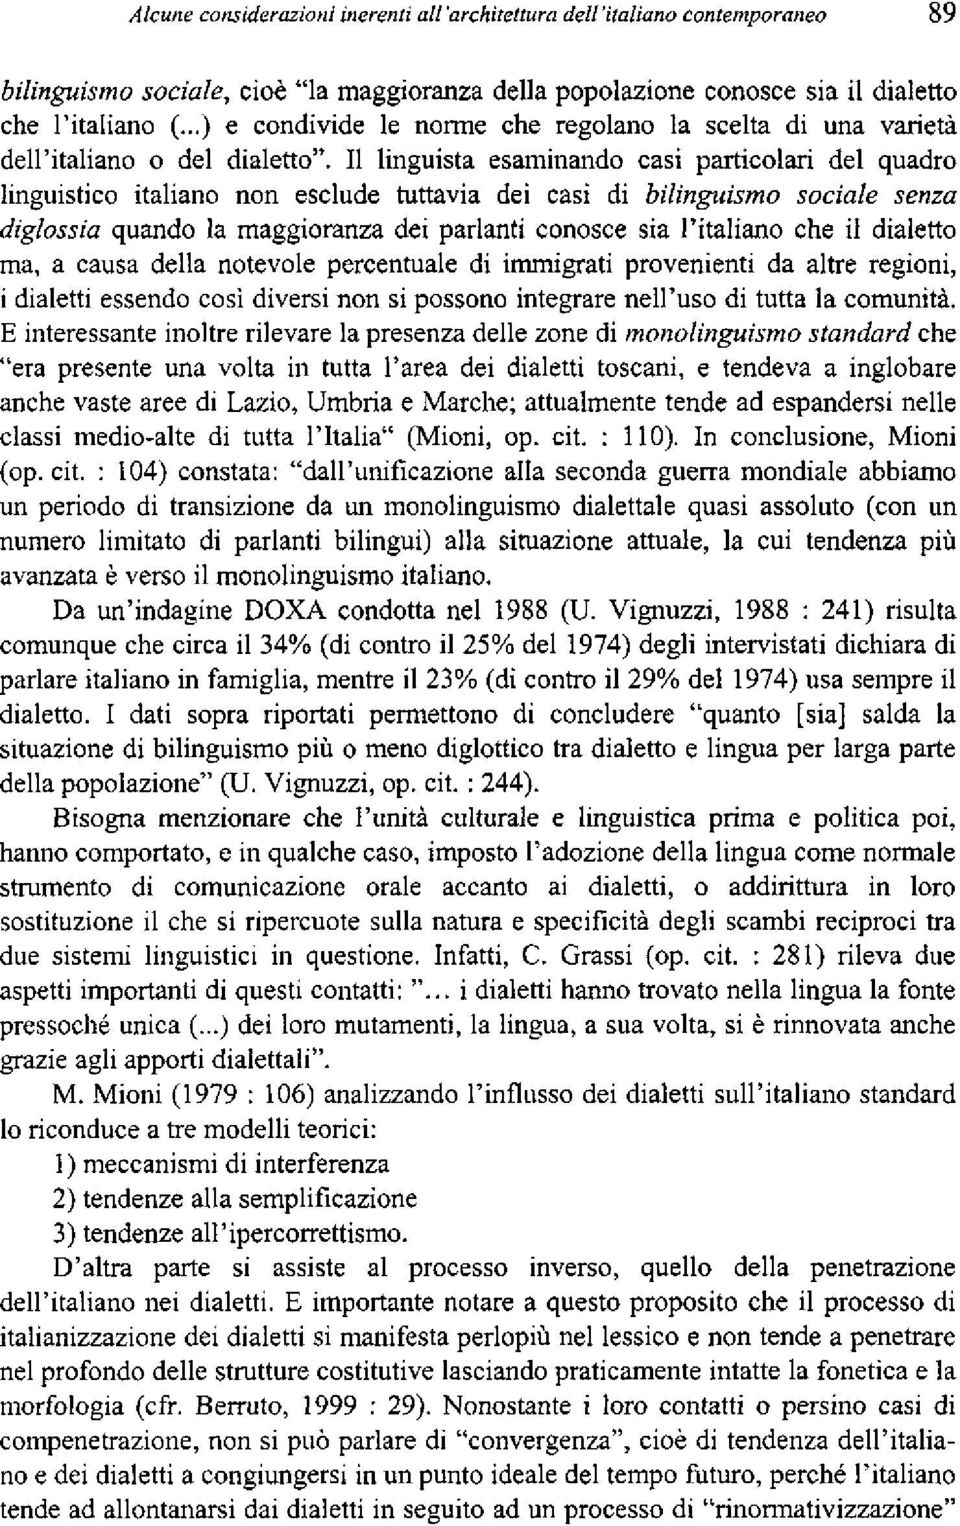 II linguista esaminando casi particolari del ąuadro linguistico italiano non esclude tuttavia dei casi di bilinguismo sociale senza diglossia ąuando la maggioranza dei parlanti conosce sia ritaliano